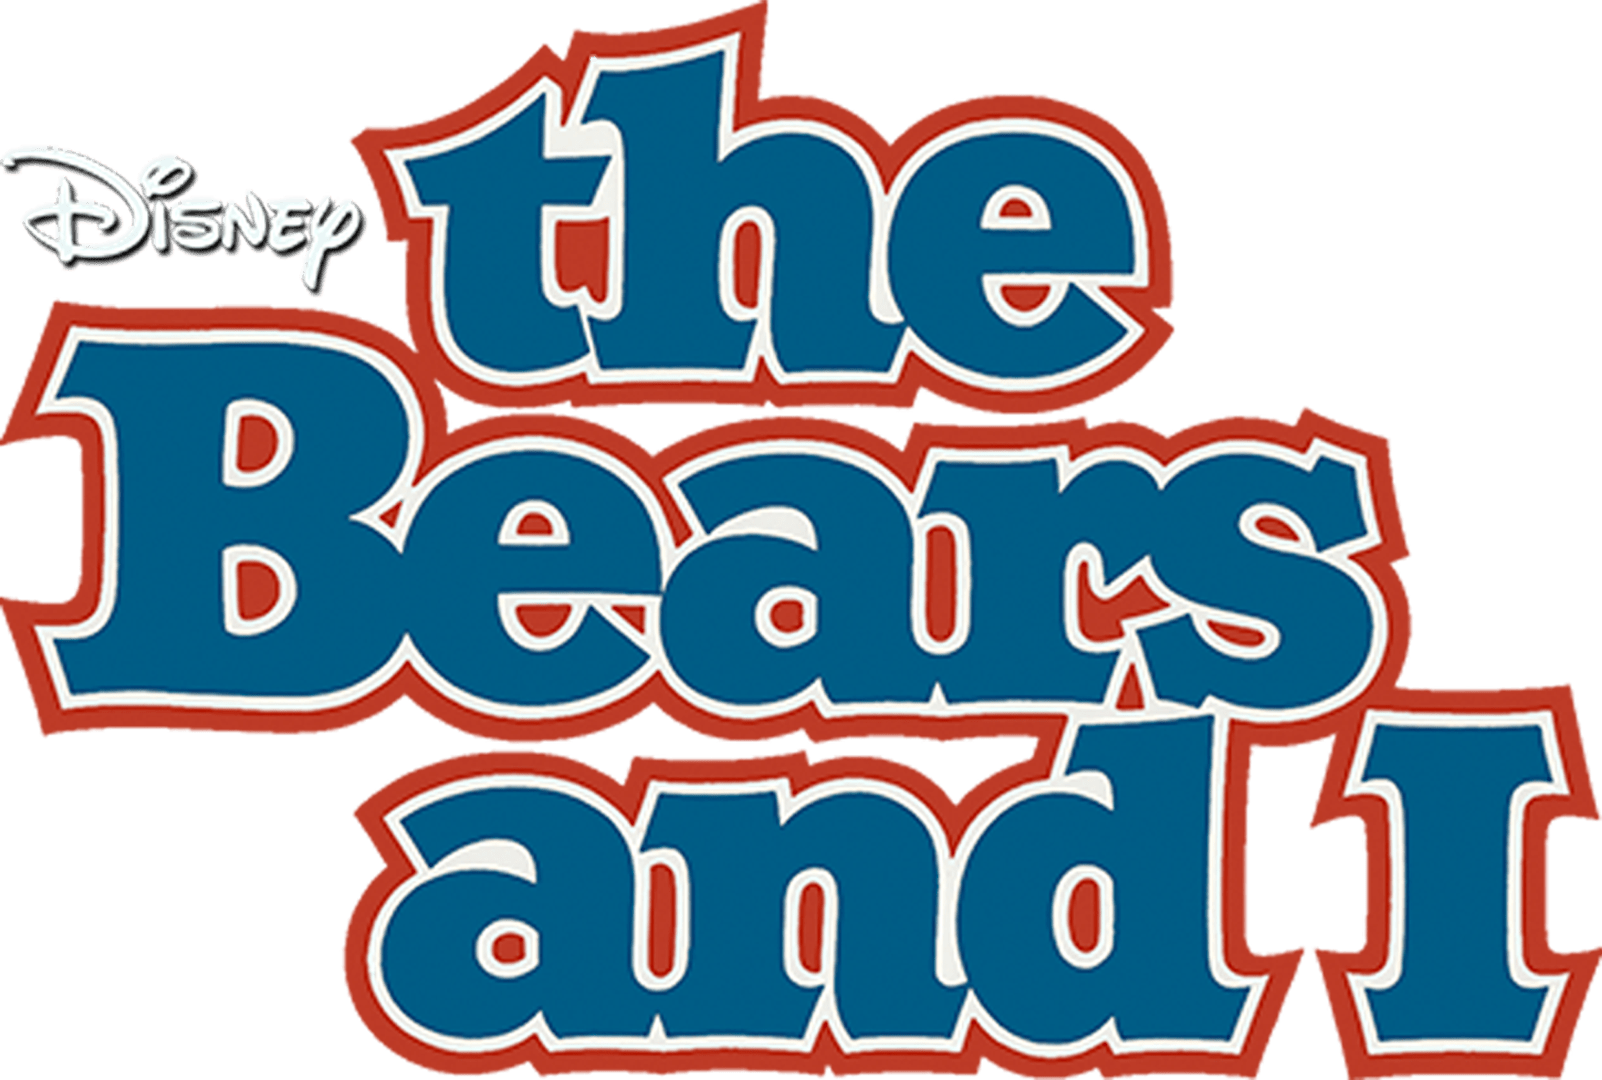 The Bears and I Disney+